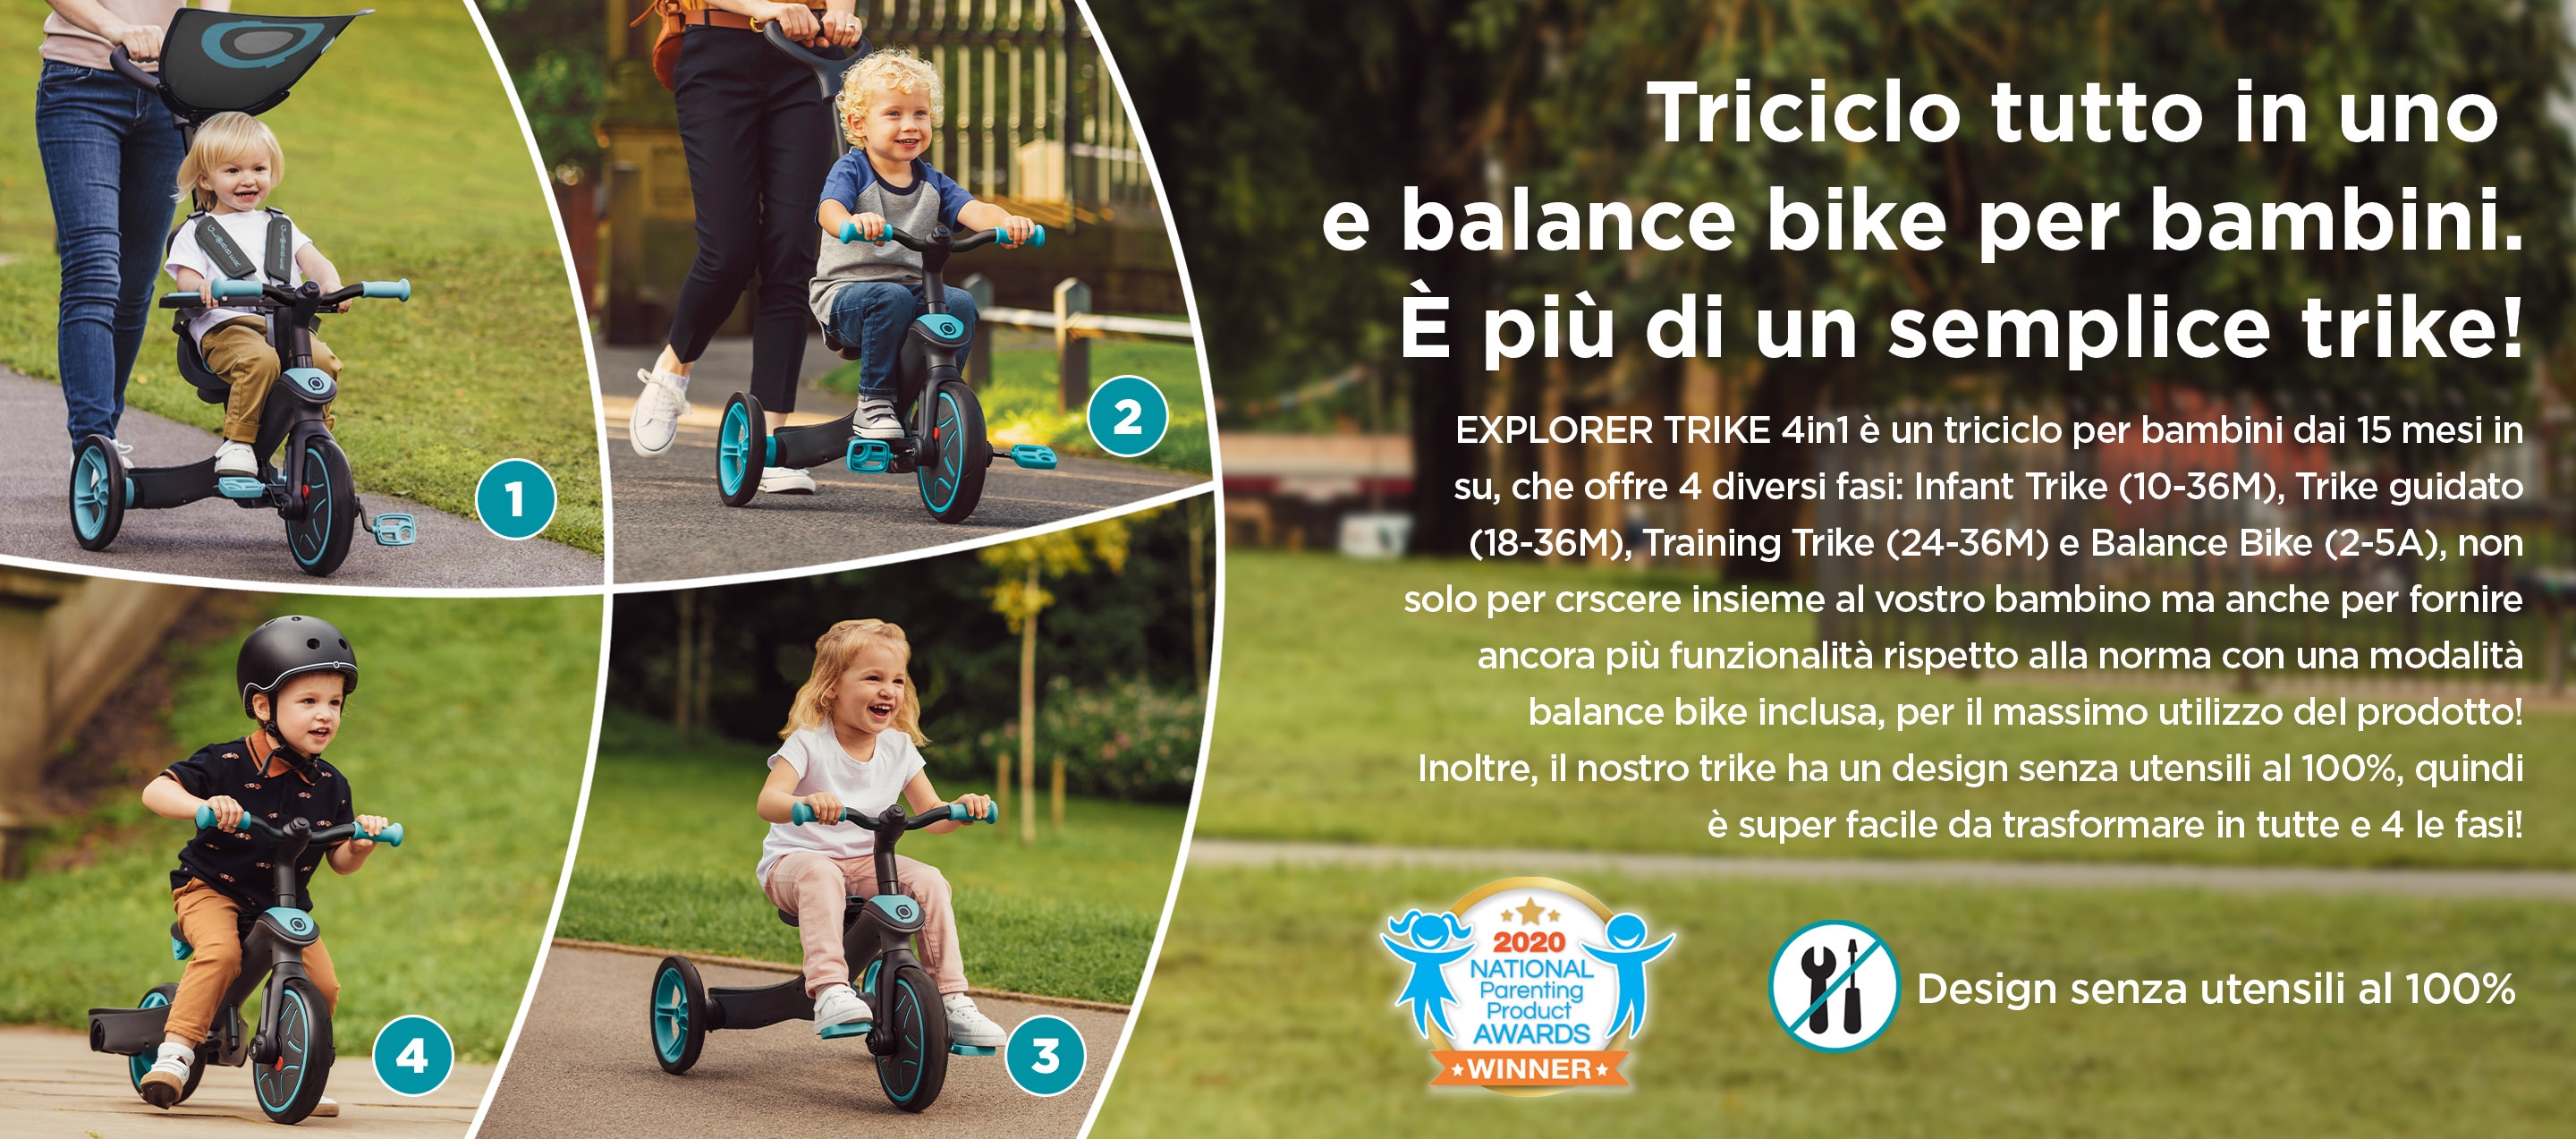 Triciclo tutto in uno e balance bike per bambini. È più di un semplice trike! EXPLORER TRIKE 4in1 è un triciclo per bambini dai 15 mesi in su, che offre 4 diversi fasi: Infant Trike (10-36M), Trike guidato (18-36M), Training Trike (24-36M) e Balance Bike (2-5A), non solo per crscere insieme al vostro bambino ma anche per fornire ancora più funzionalità rispetto alla norma con una modalità balance bike inclusa, per il massimo utilizzo del prodotto! Inoltre, il nostro trike ha un design senza utensili al 100%, quindi è super facile da trasformare in tutte e 4 le fasi! 